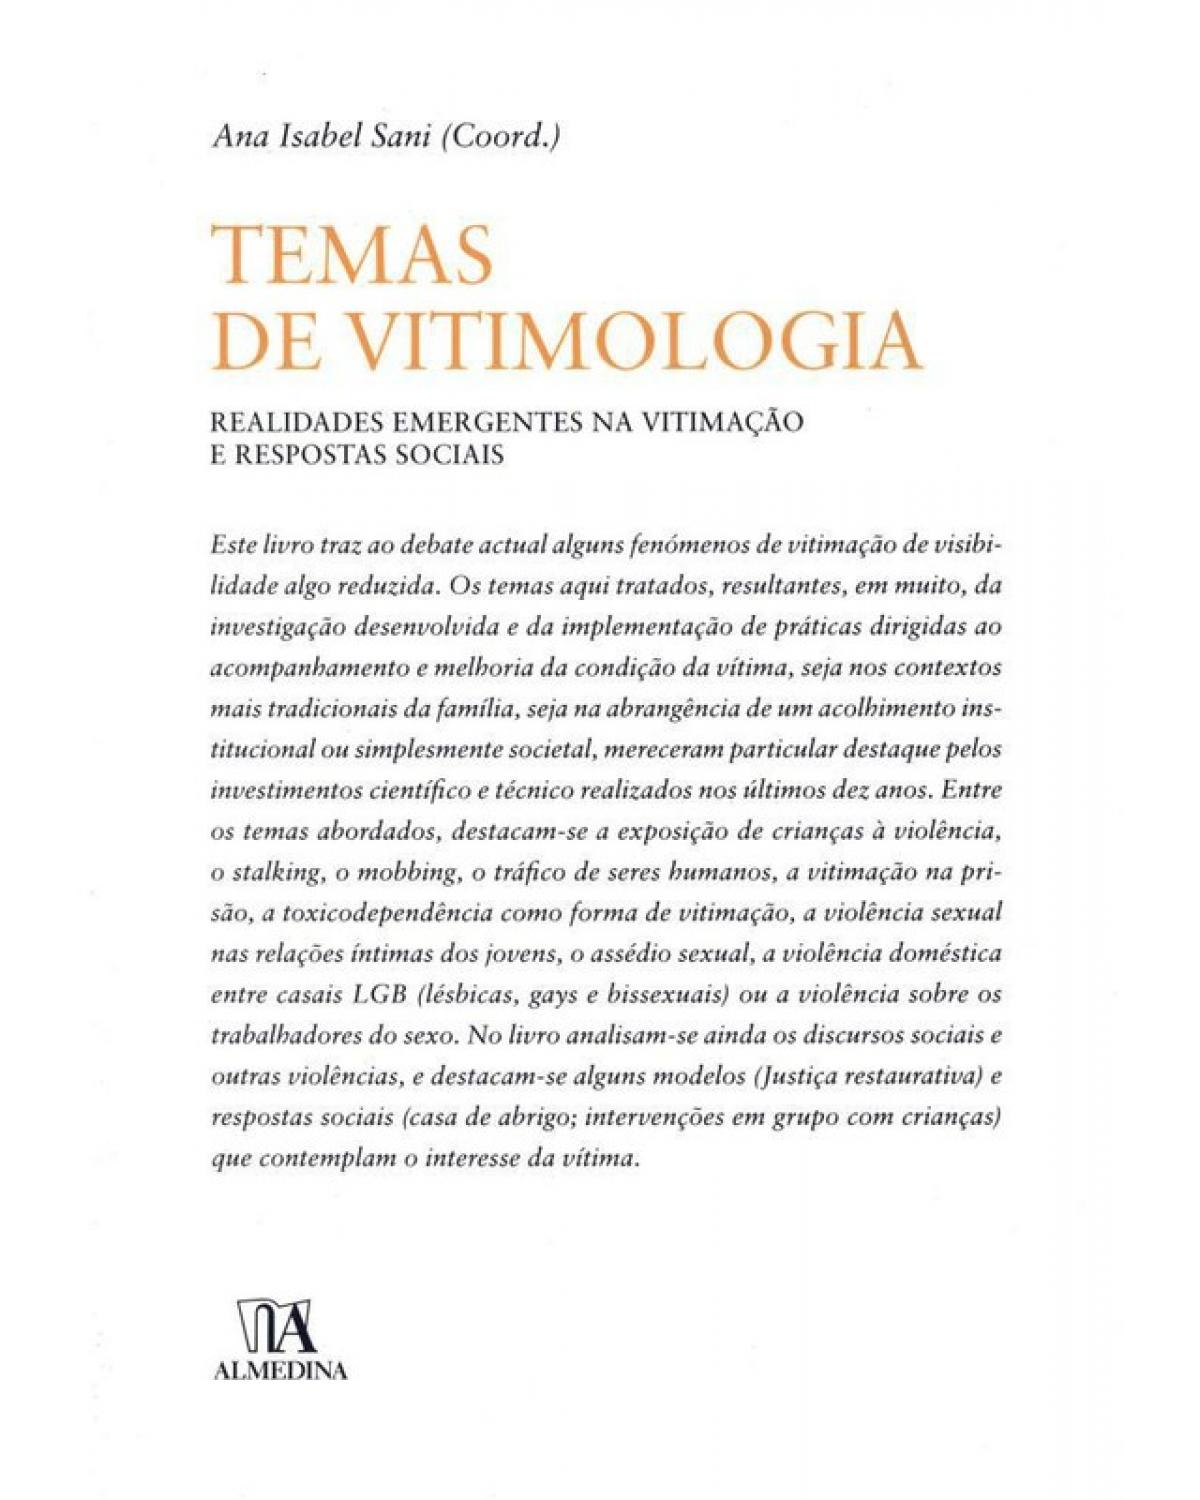 Temas de vitimologia - realidades emergentes na vitimação e respostas sociais - 1ª Edição | 2011